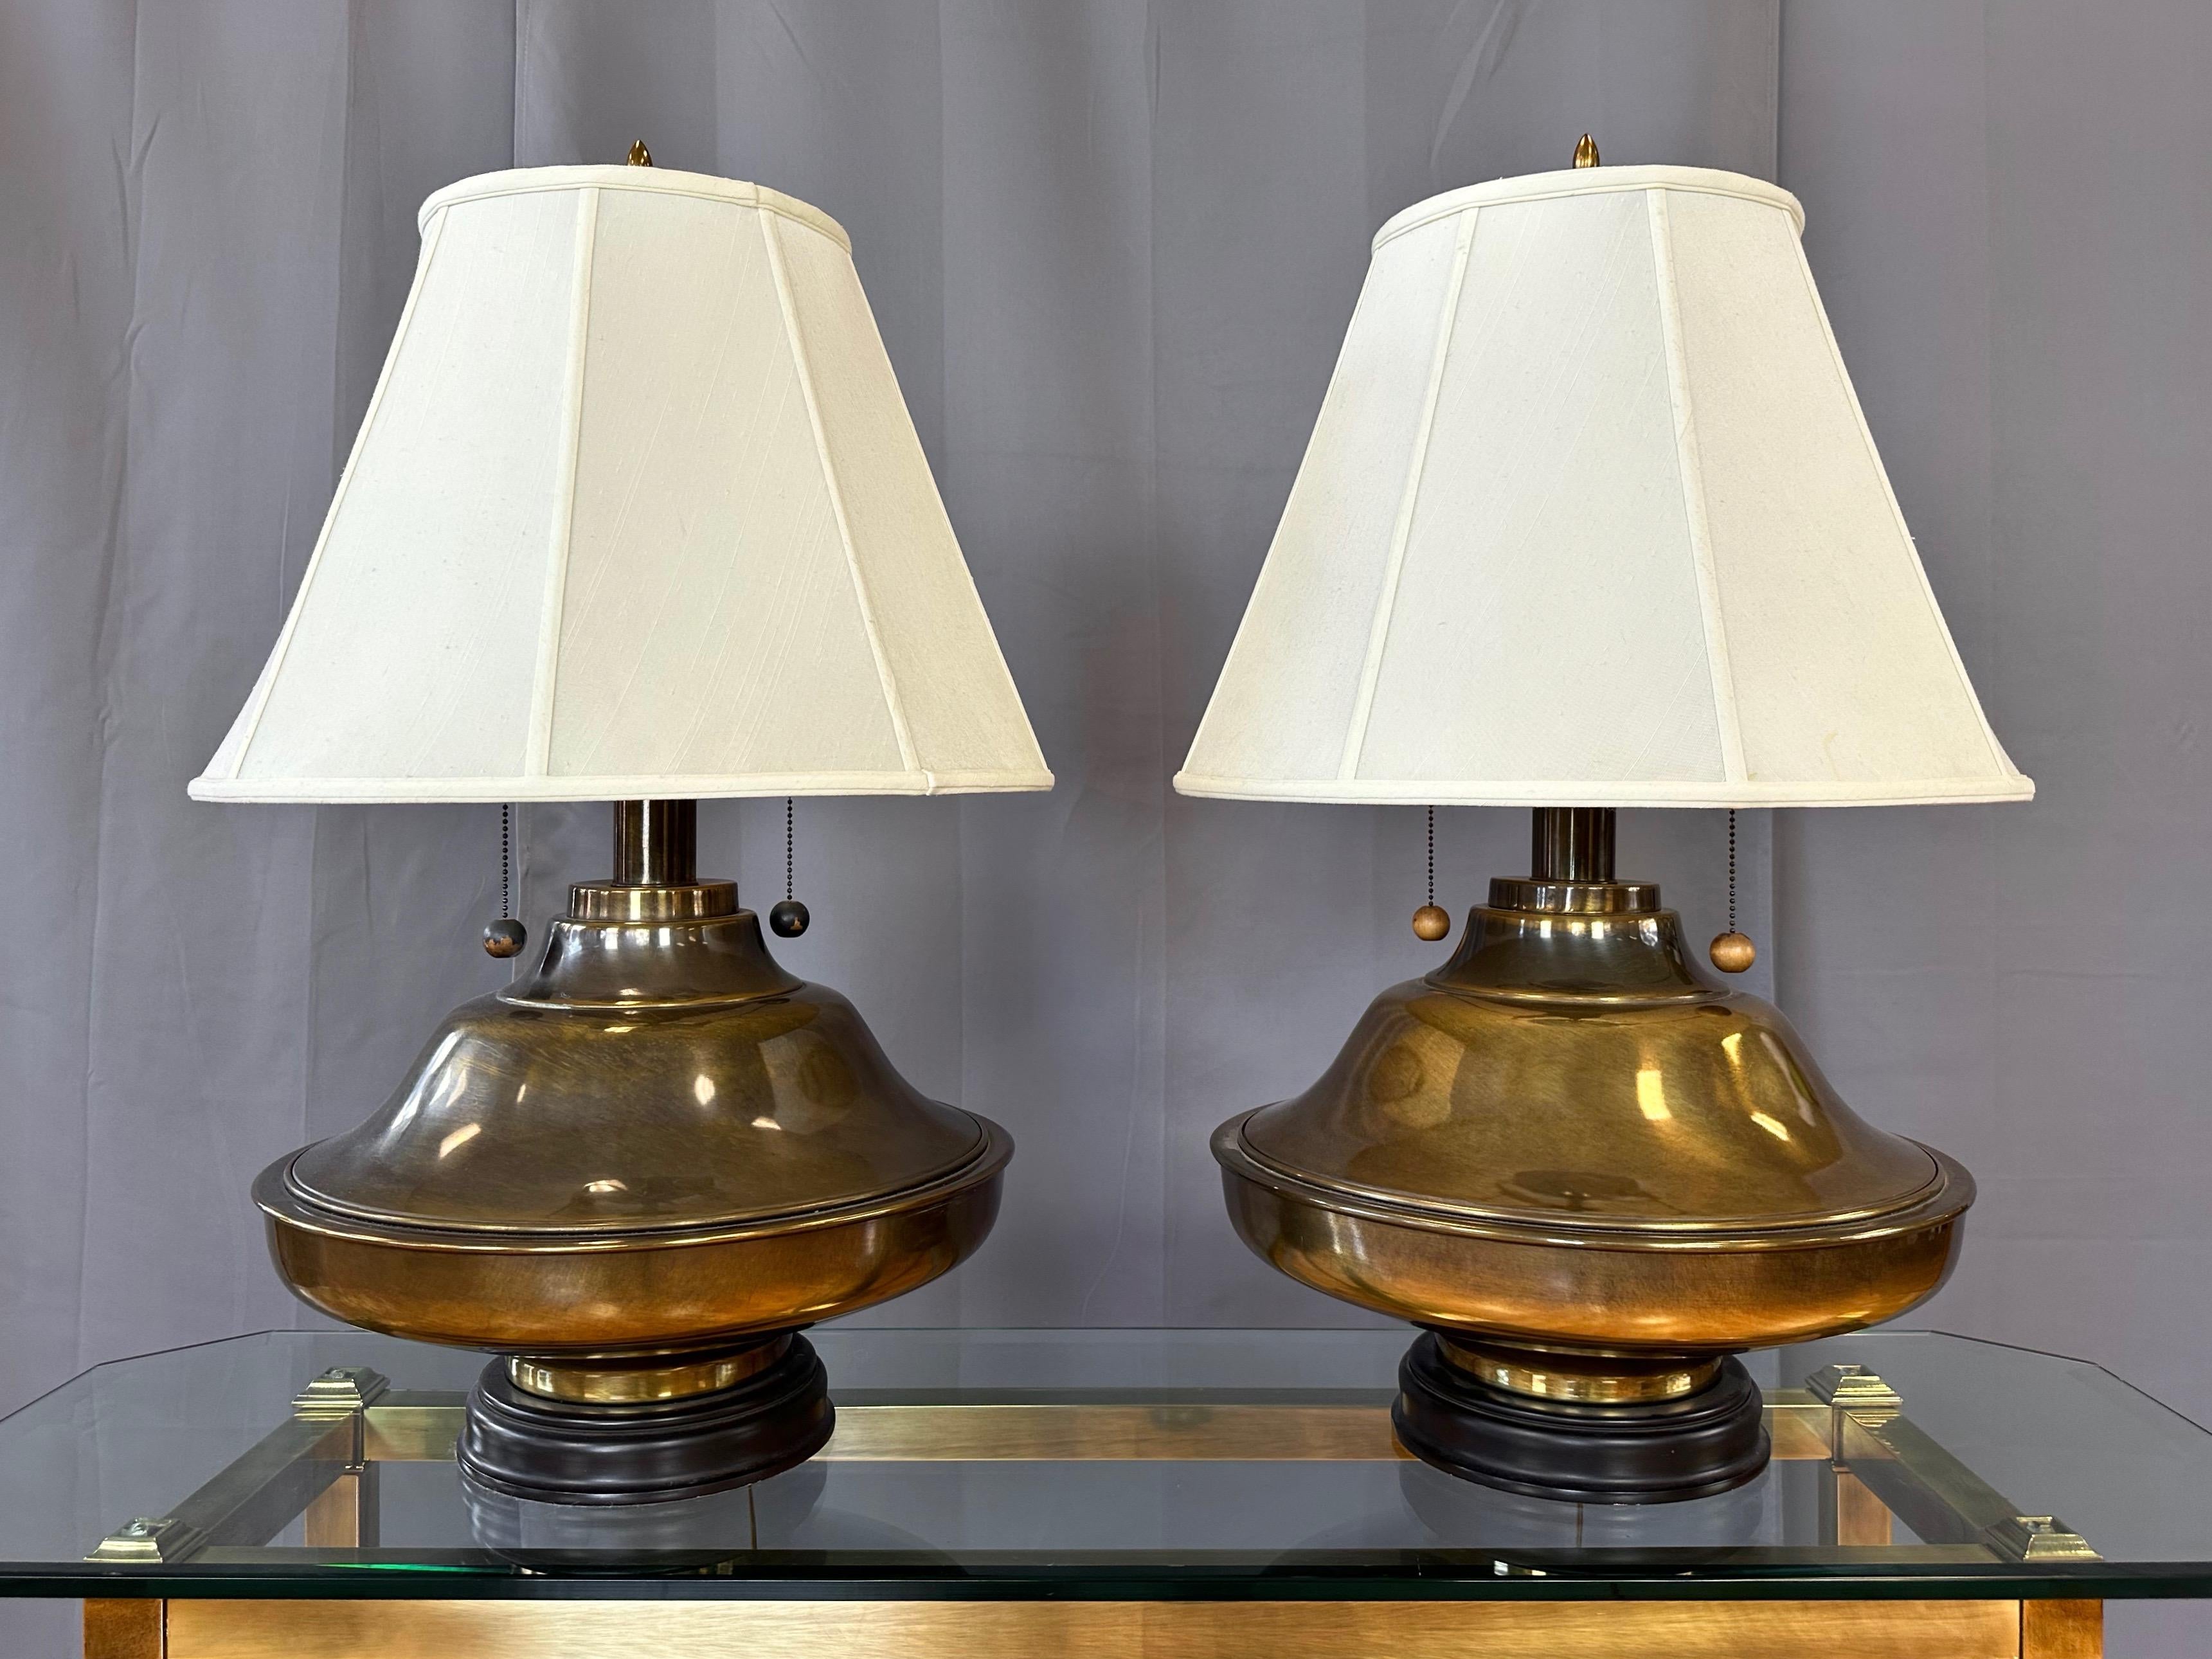 Paire de lampes de table monumentales des années 1960, de style Marbro et de style Hollywood Regency, en laiton antique, avec des abat-jours en soie.

Les corps ronds en laiton, très substantiels et visuellement frappants, présentent une forme tout